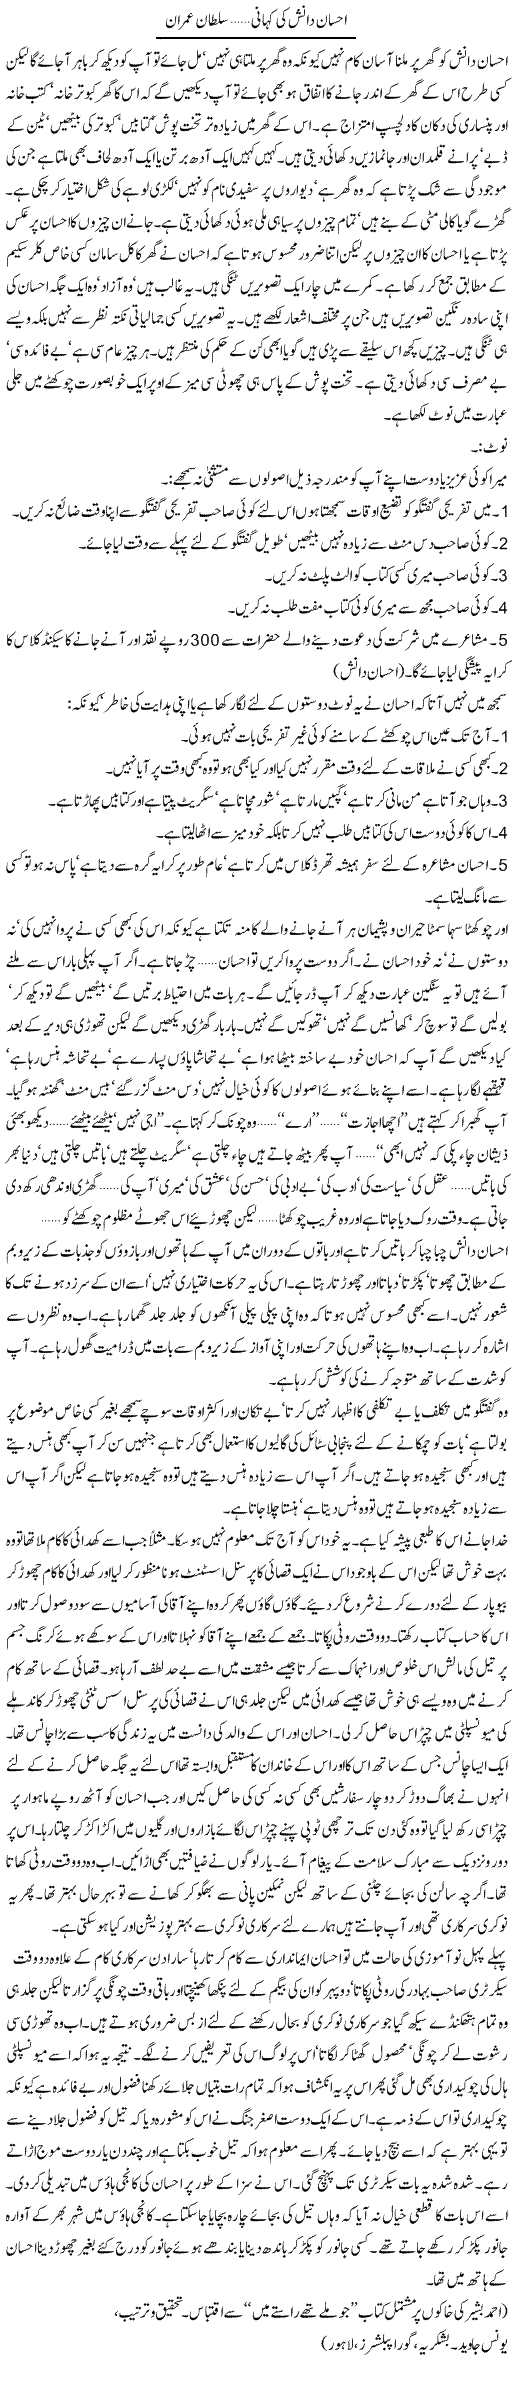 Ahsan Danish Ki Kahani | Sultan Imran | Daily Urdu Columns